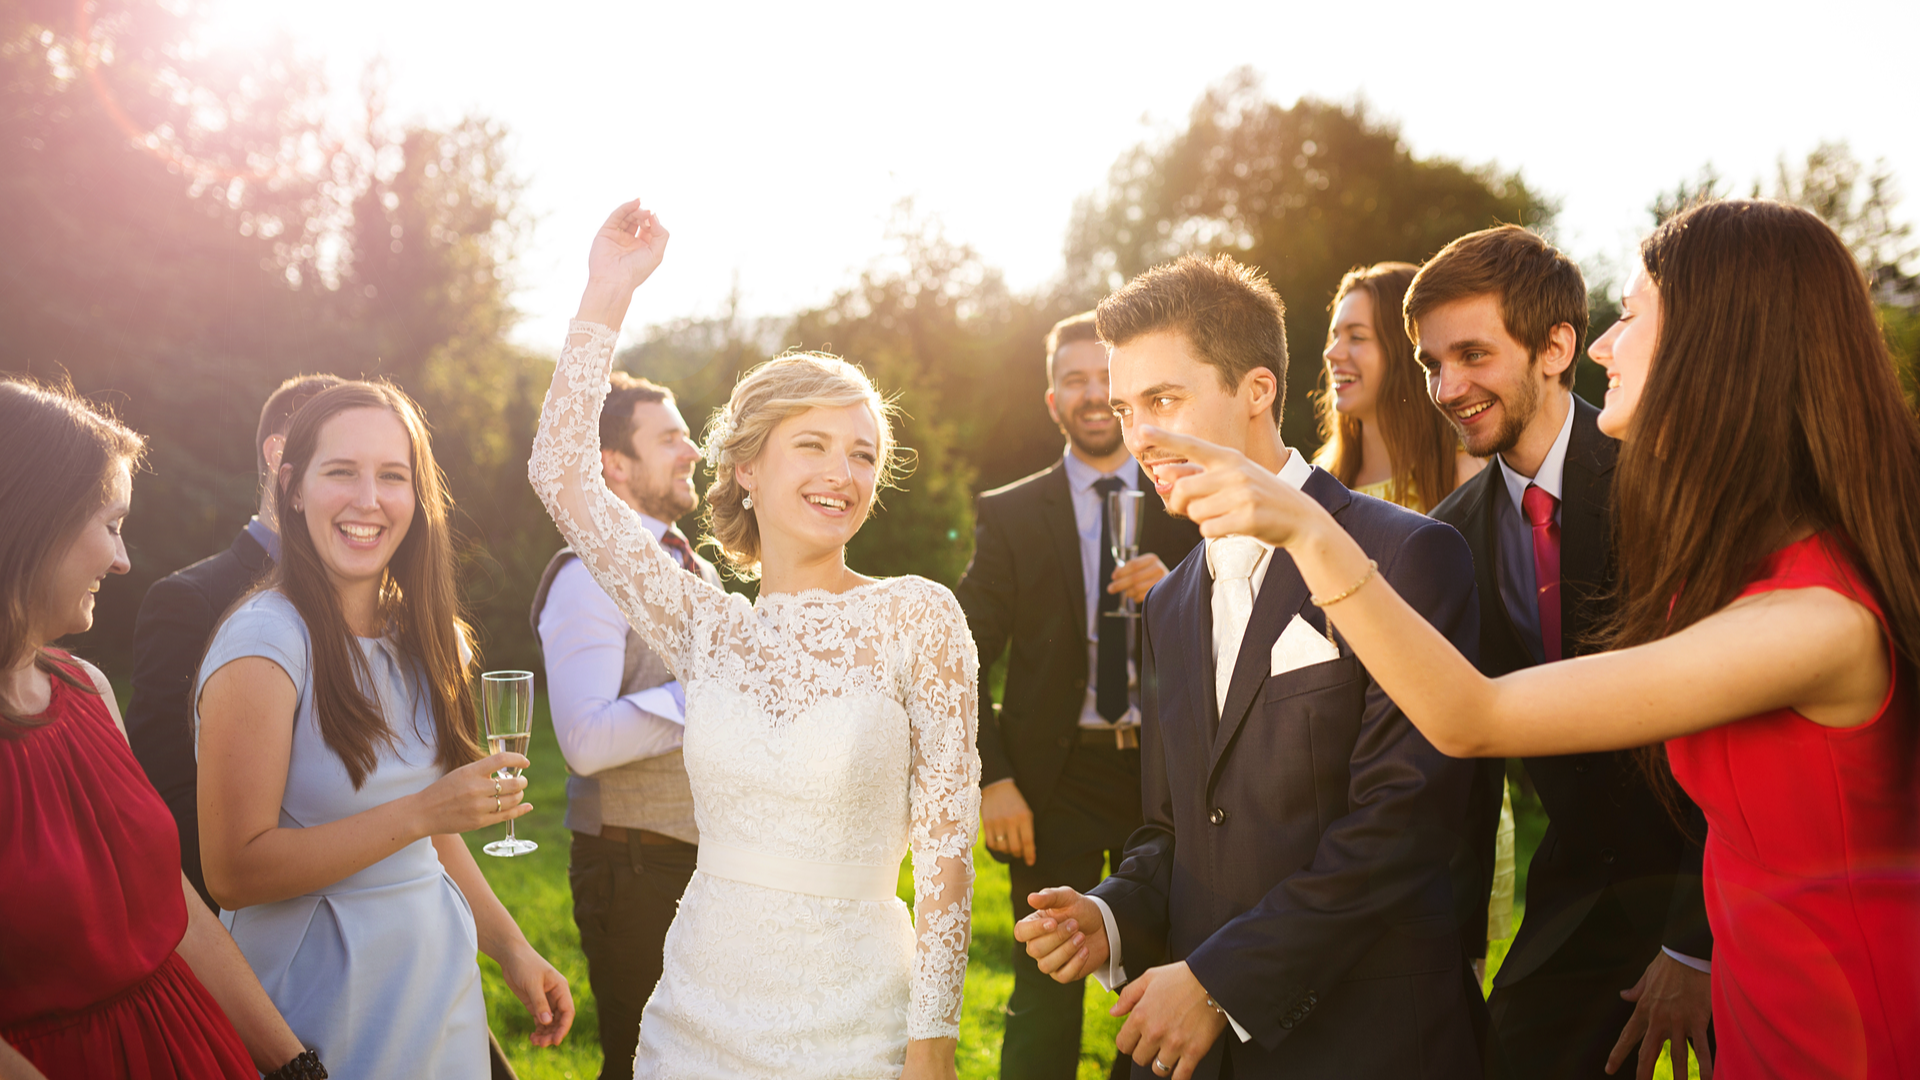 Reguli de eticheta: ce sa NU porti la o nunta